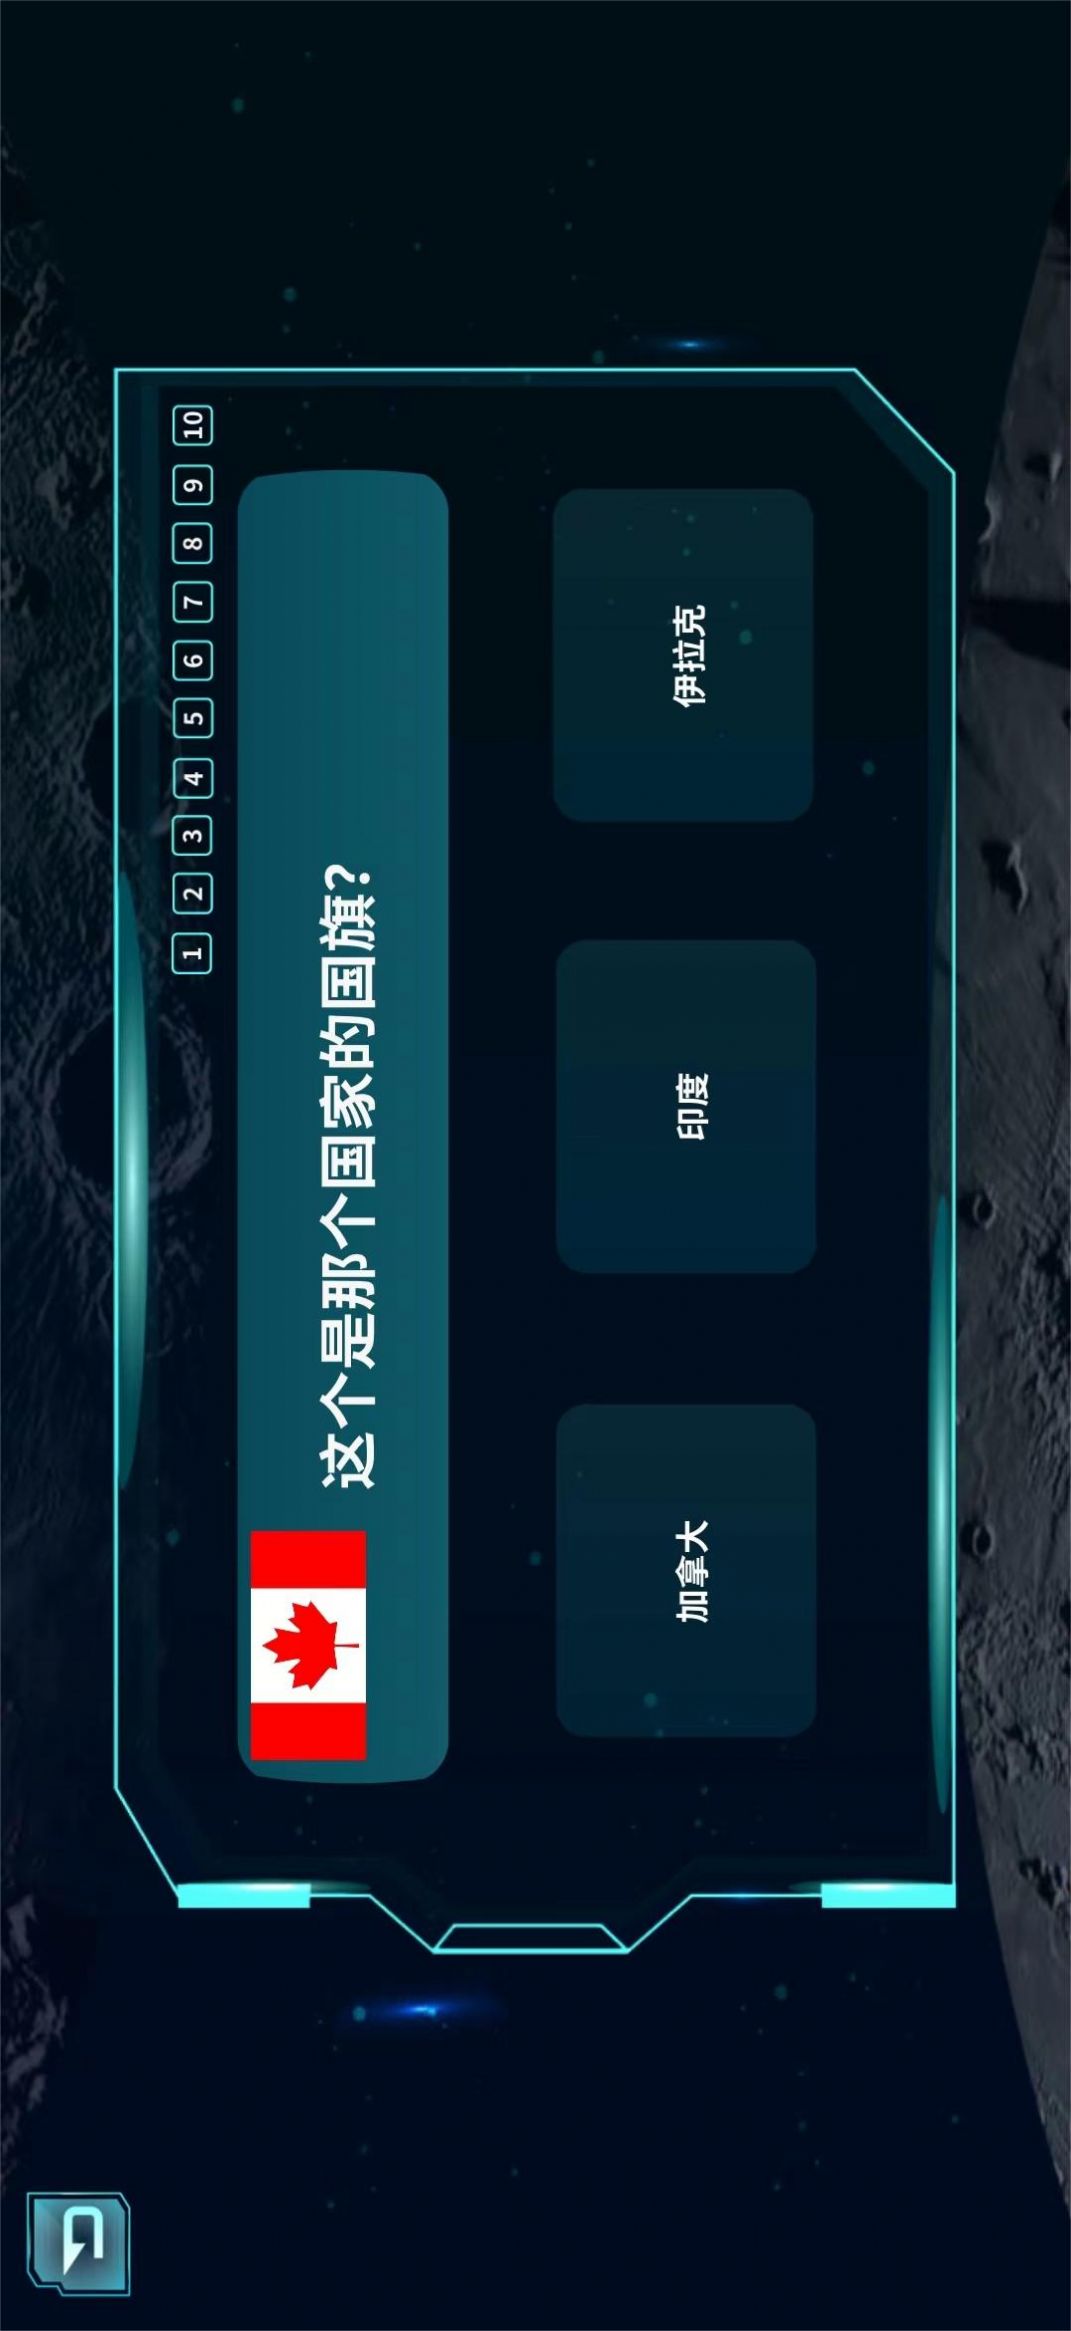 炫极星AR地球仪app图1